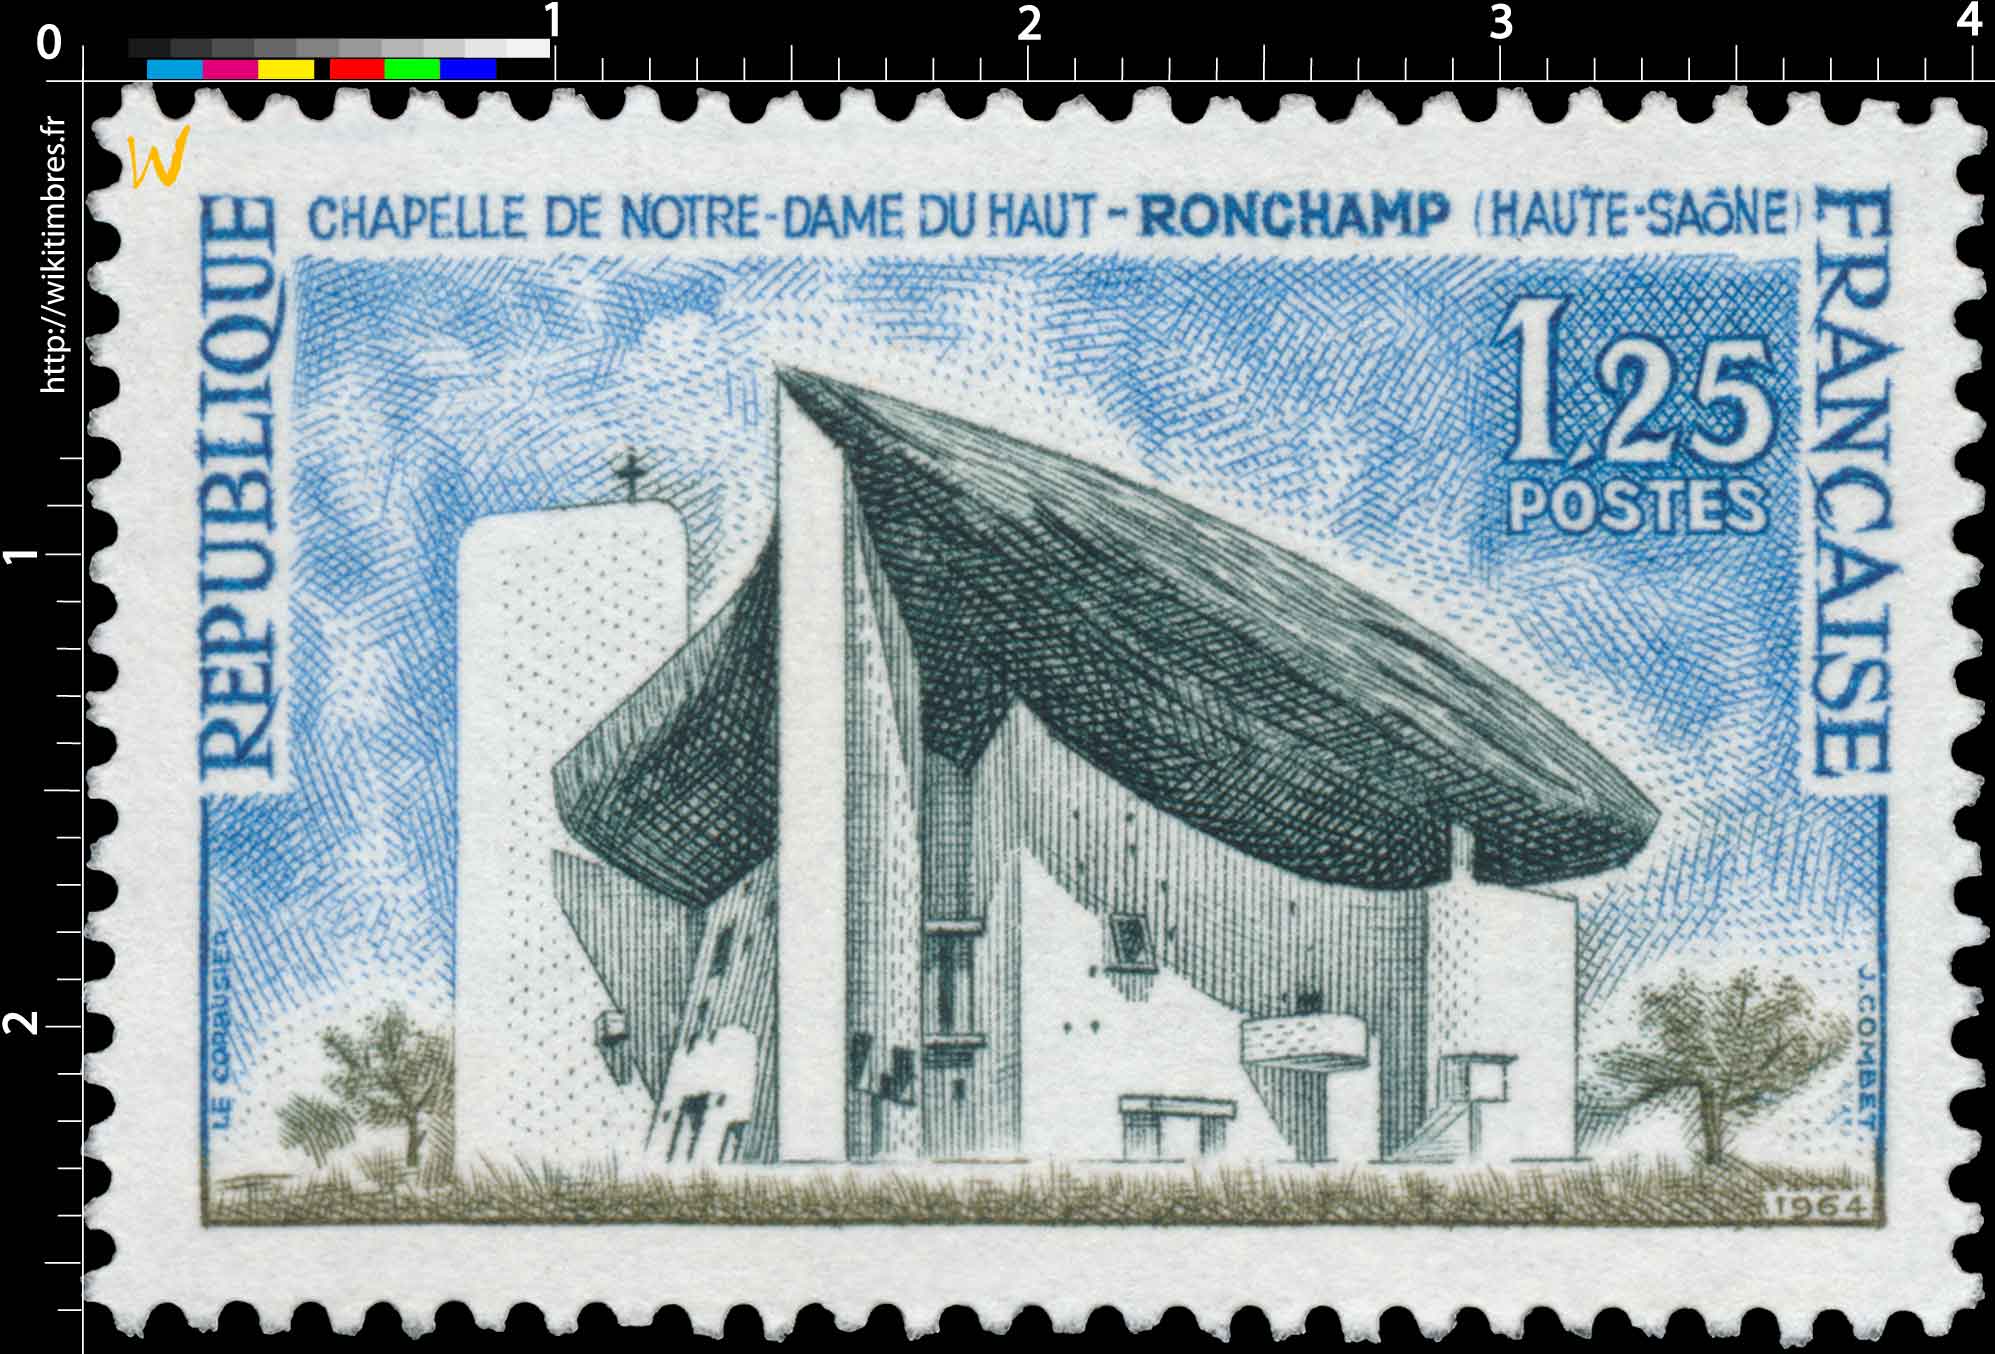 1964 CHAPELLE DE NOTRE-DAME DU HAUT (HAUTE-SAÔNE)